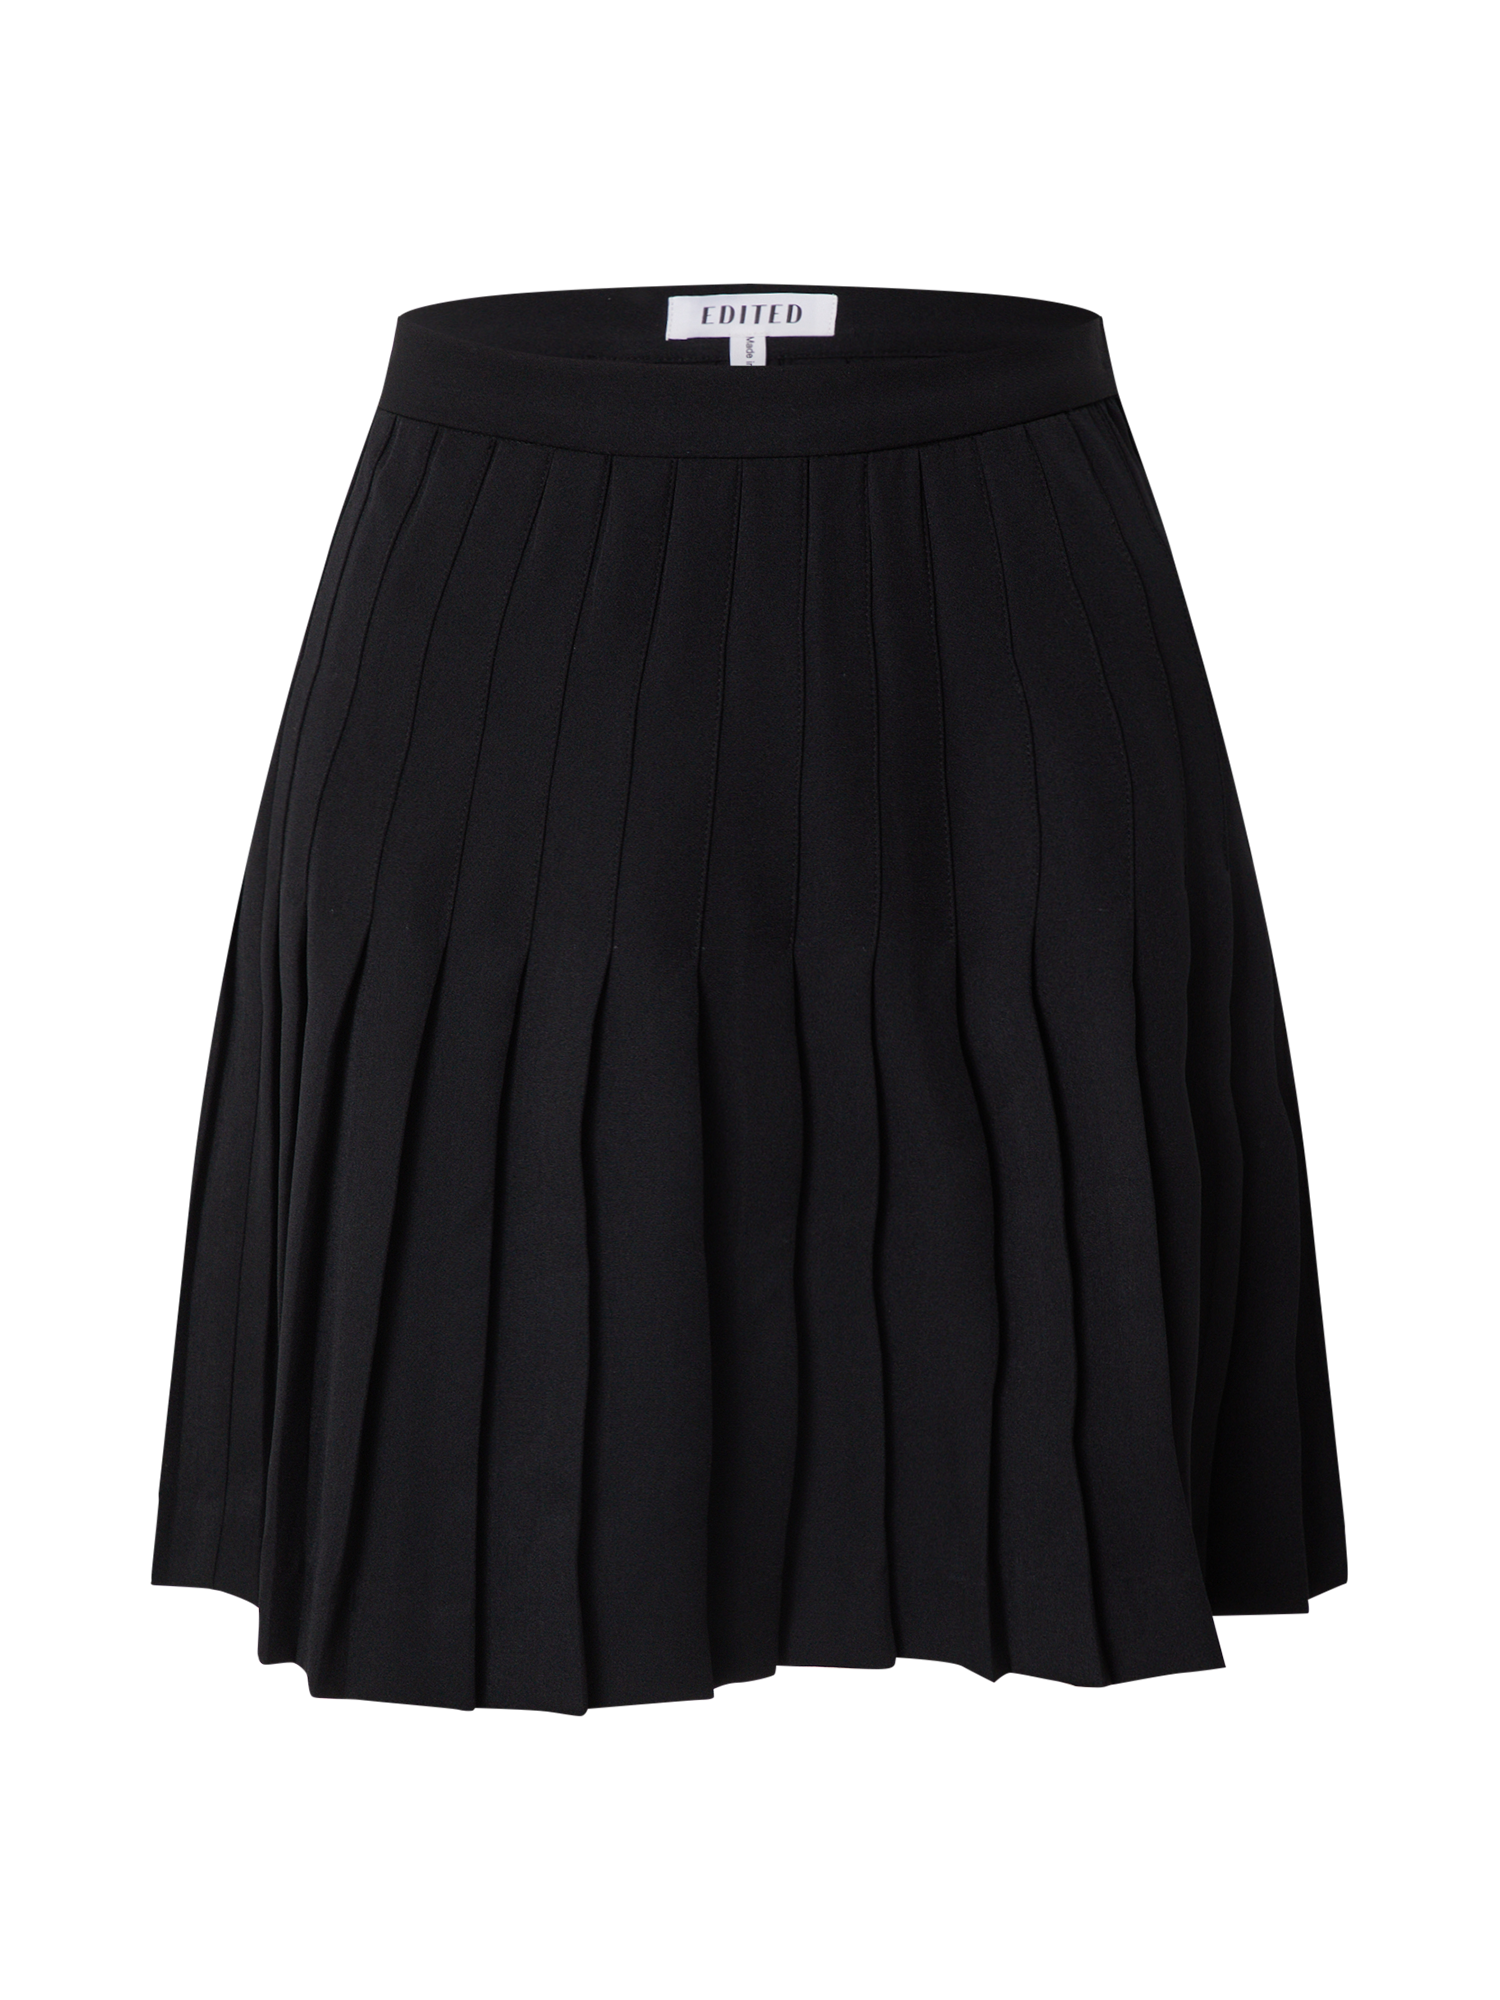 Odzież Kobiety EDITED Spódnica Astrid w kolorze Czarnym 